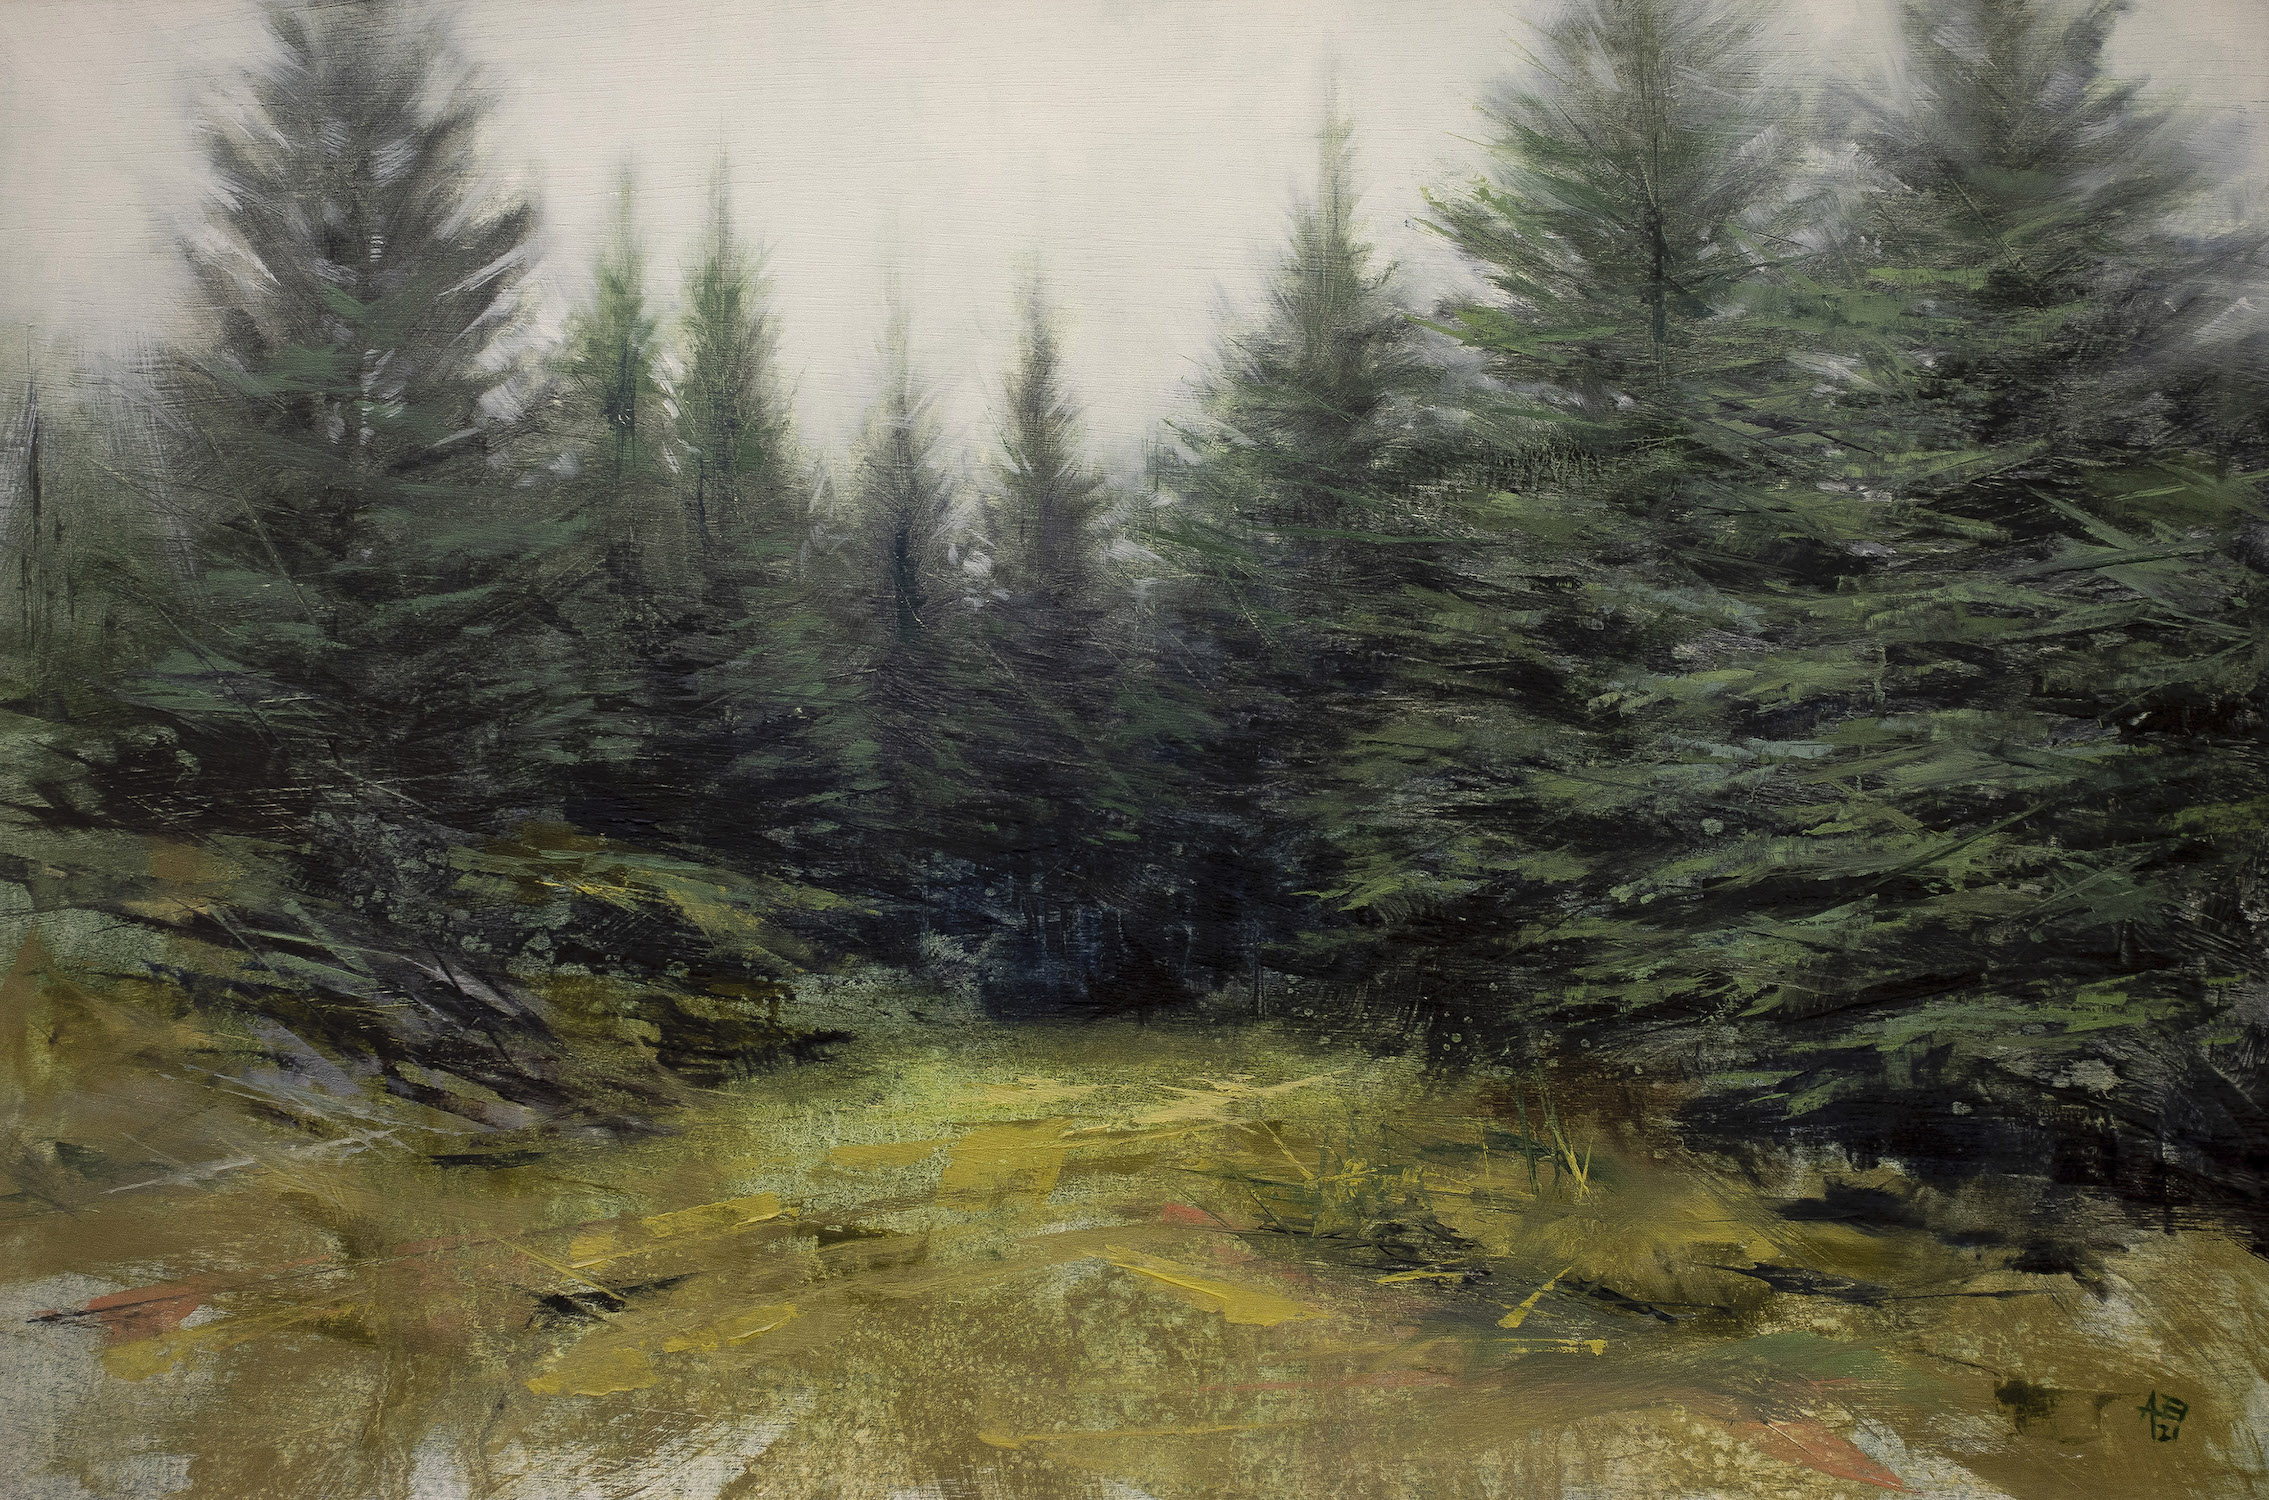 'Ardgarten Edge', Al Bell, Oil on gesso board, 60 x 40 cm